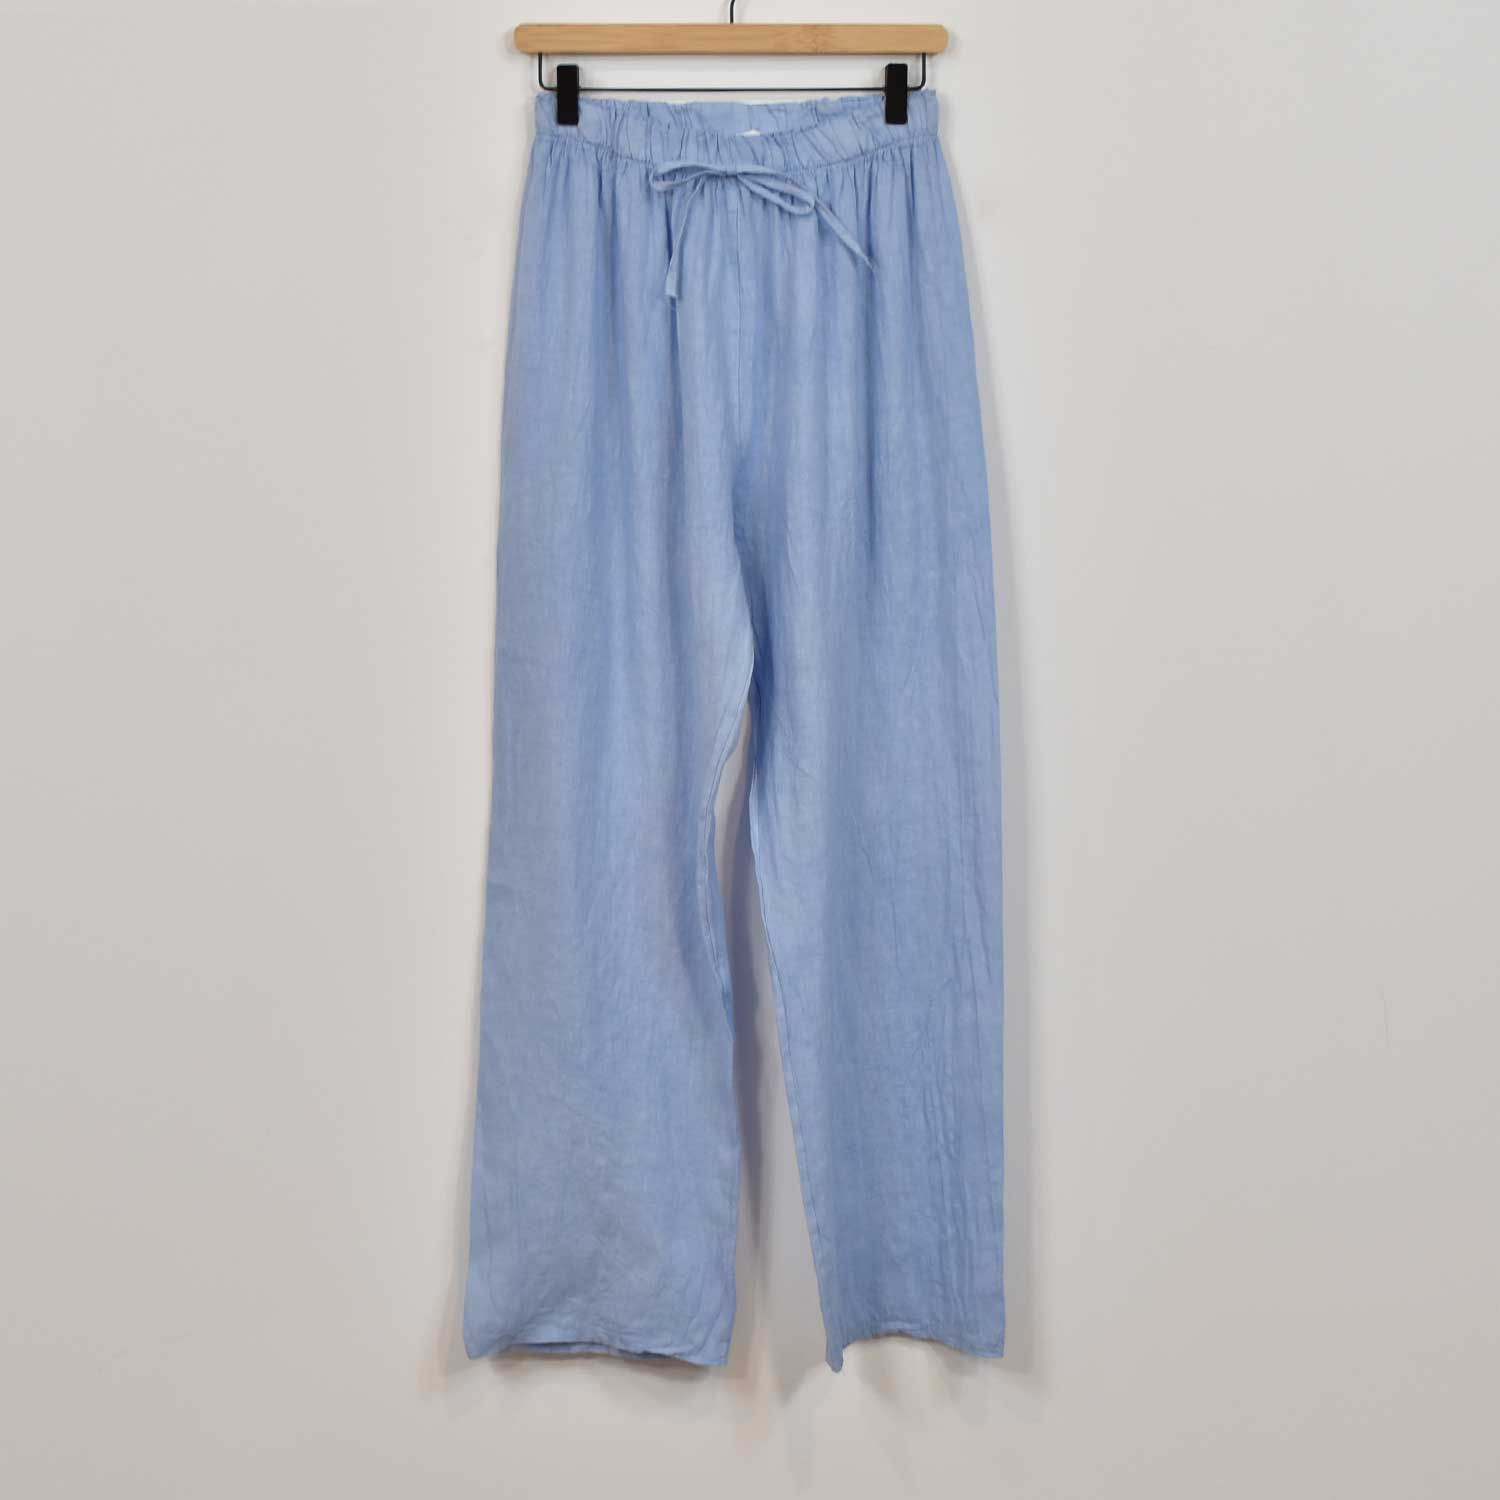 Blue wide linen pants